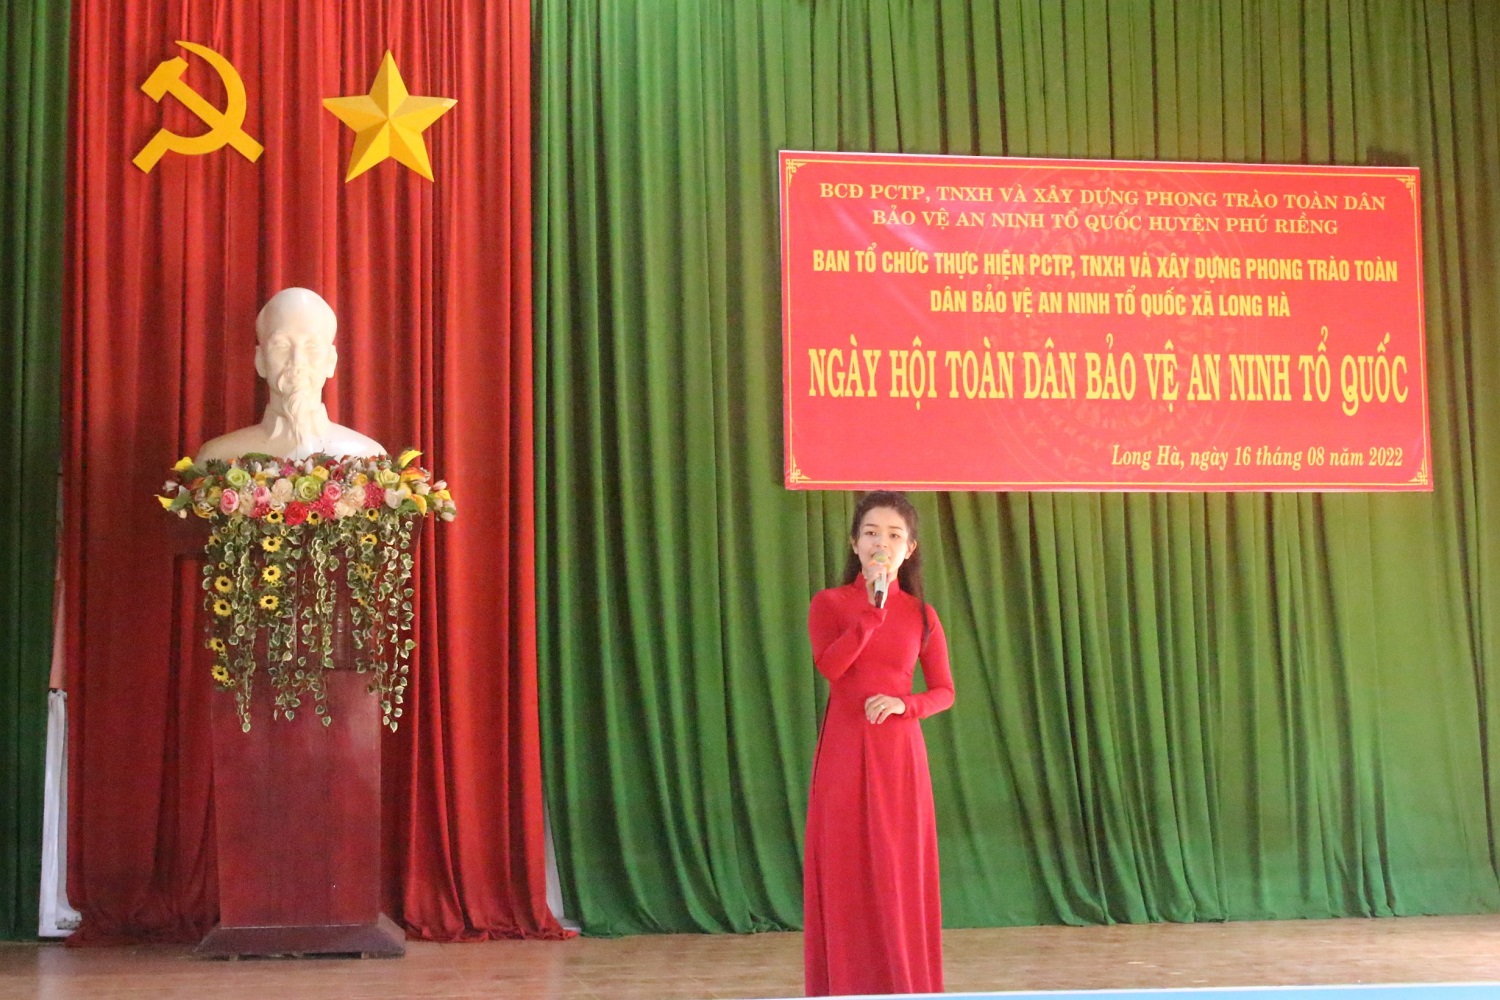 Long Hà tổ chức ngày hội toàn dân bảo vệ an ninh tổ quốc.